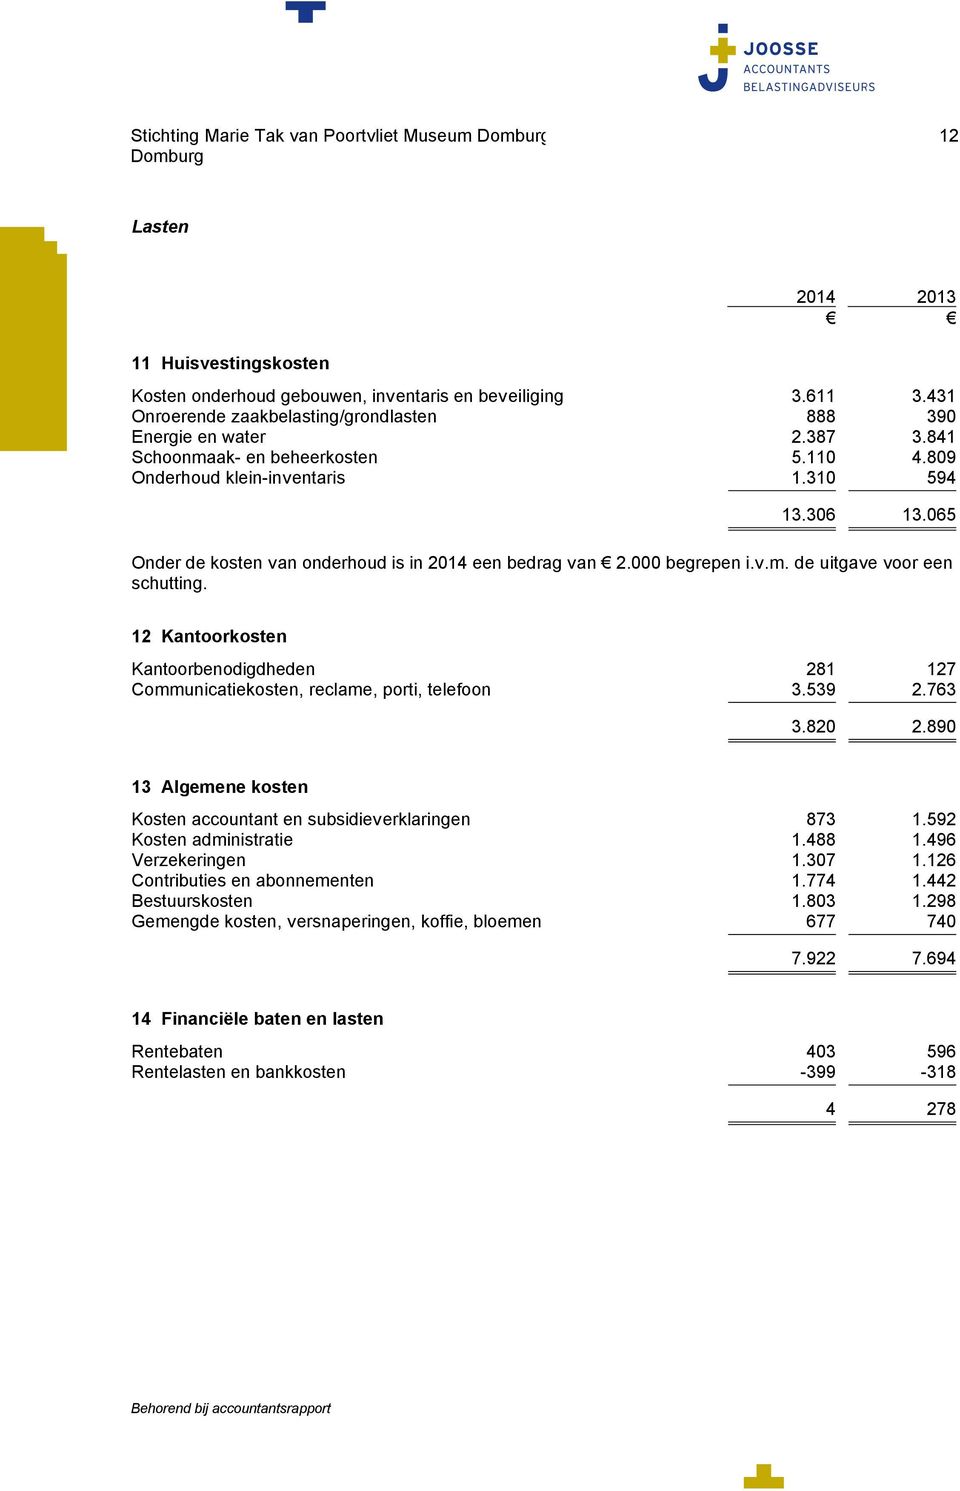 065 Onder de kosten van onderhoud is in 2014 een bedrag van 2.000 begrepen i.v.m. de uitgave voor een schutting.